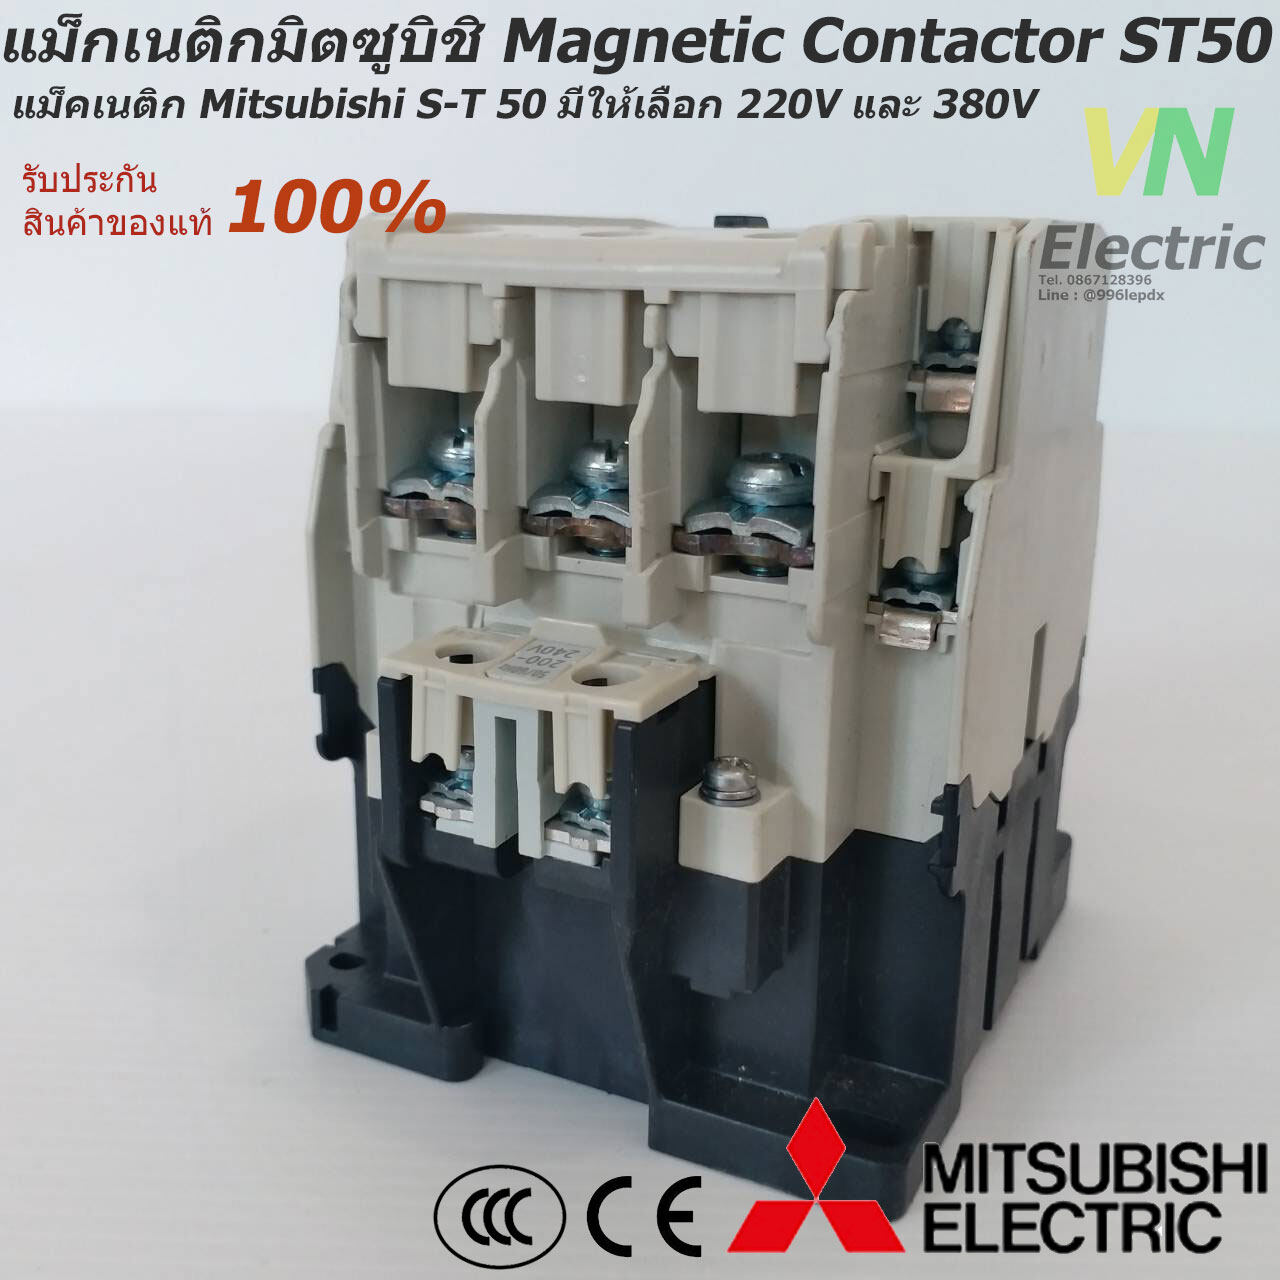 แม็กเนติกมิตซูบิชิ MITSUBISHI Magnetic Contactor S-T 50 220V-380V แม็คเนติก  ตัาเลือก คอยล์ 220 V.